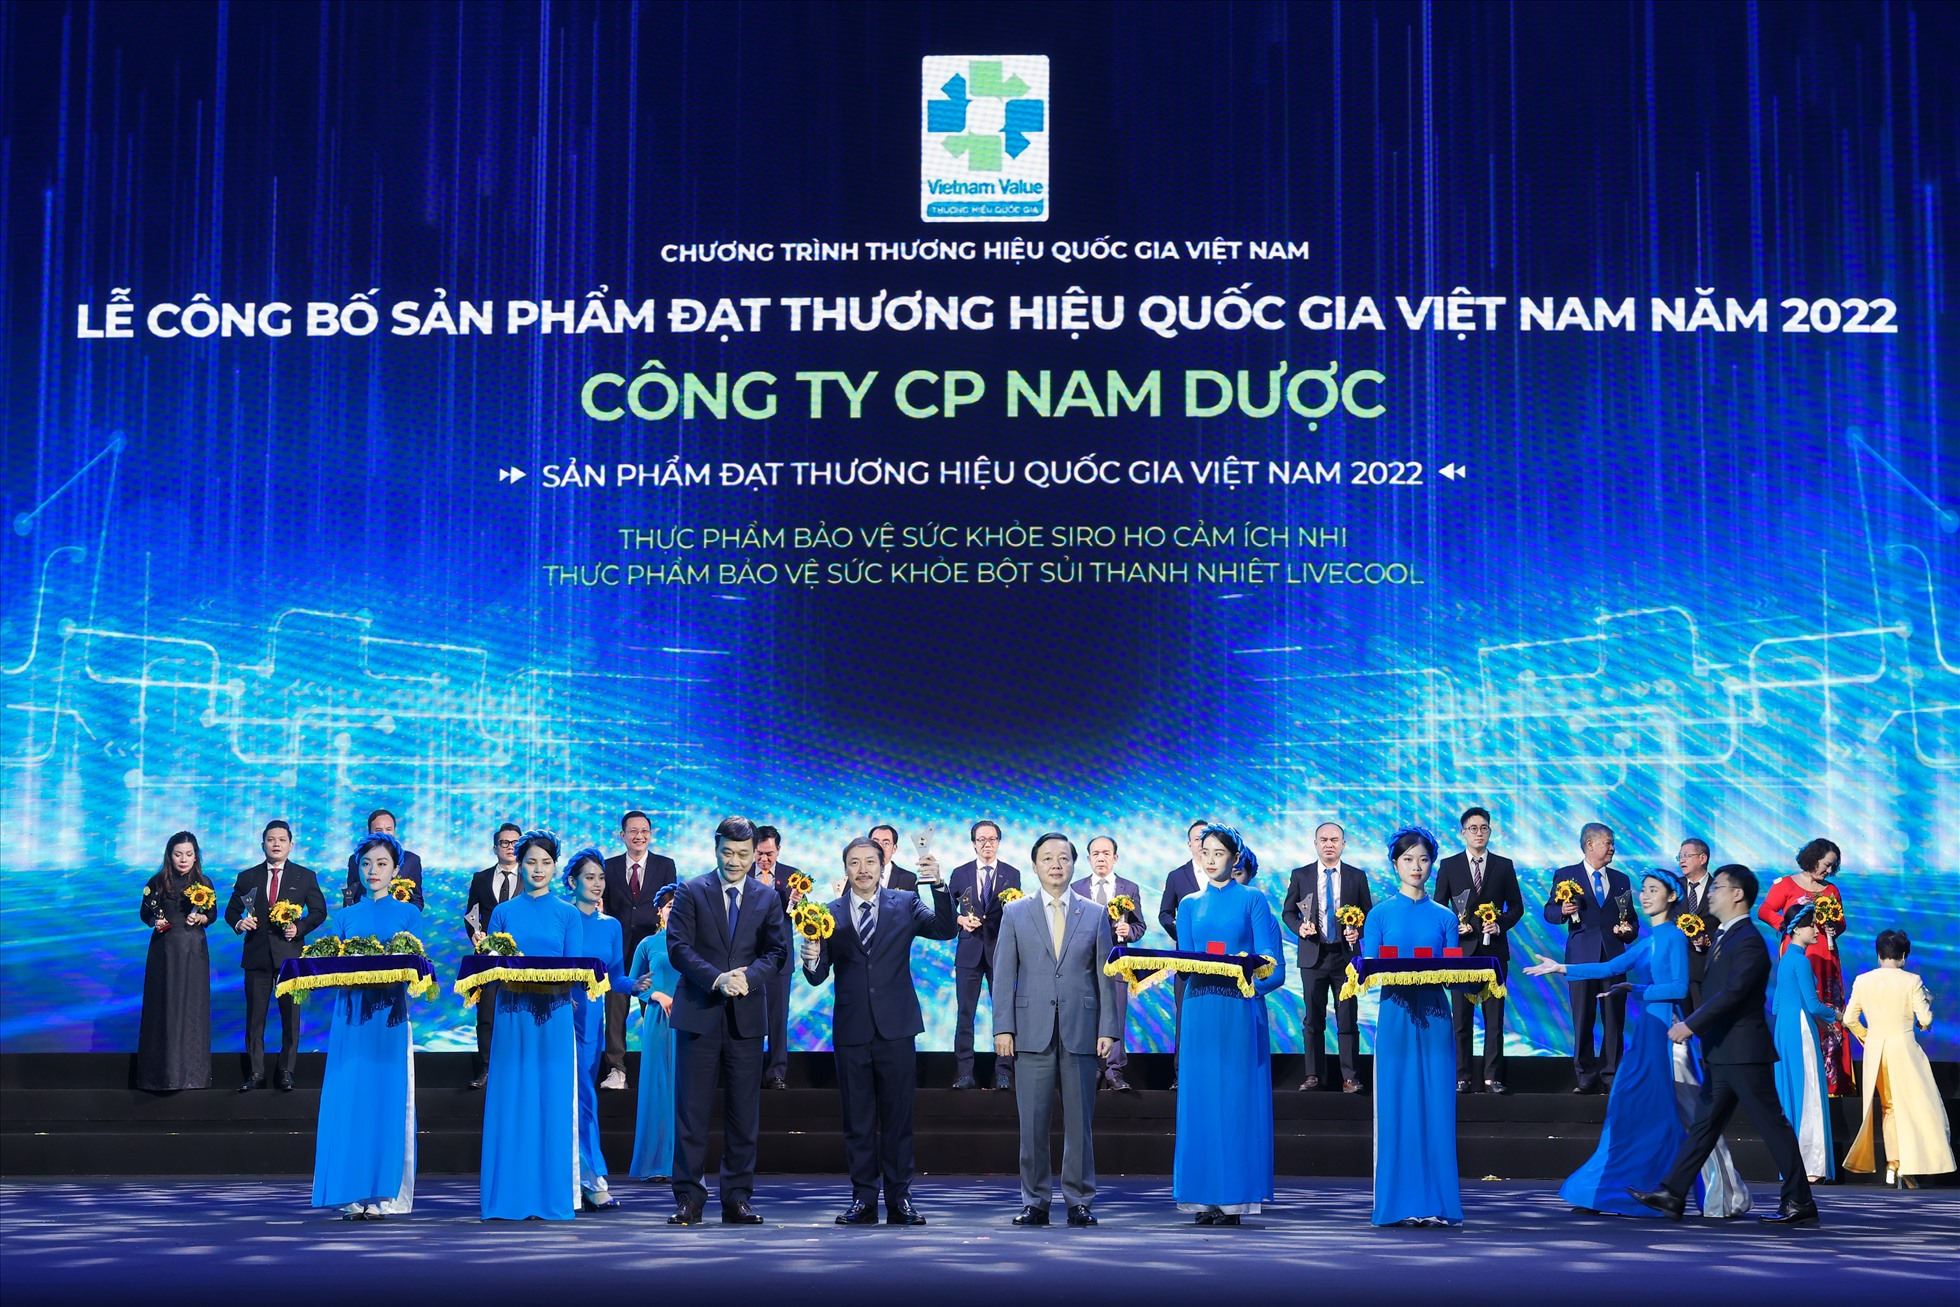 Ông Hoàng Minh Châu - Tổng Giám đốc Công ty Cổ phần Nam Dược đại diện công ty nhận chứng nhận